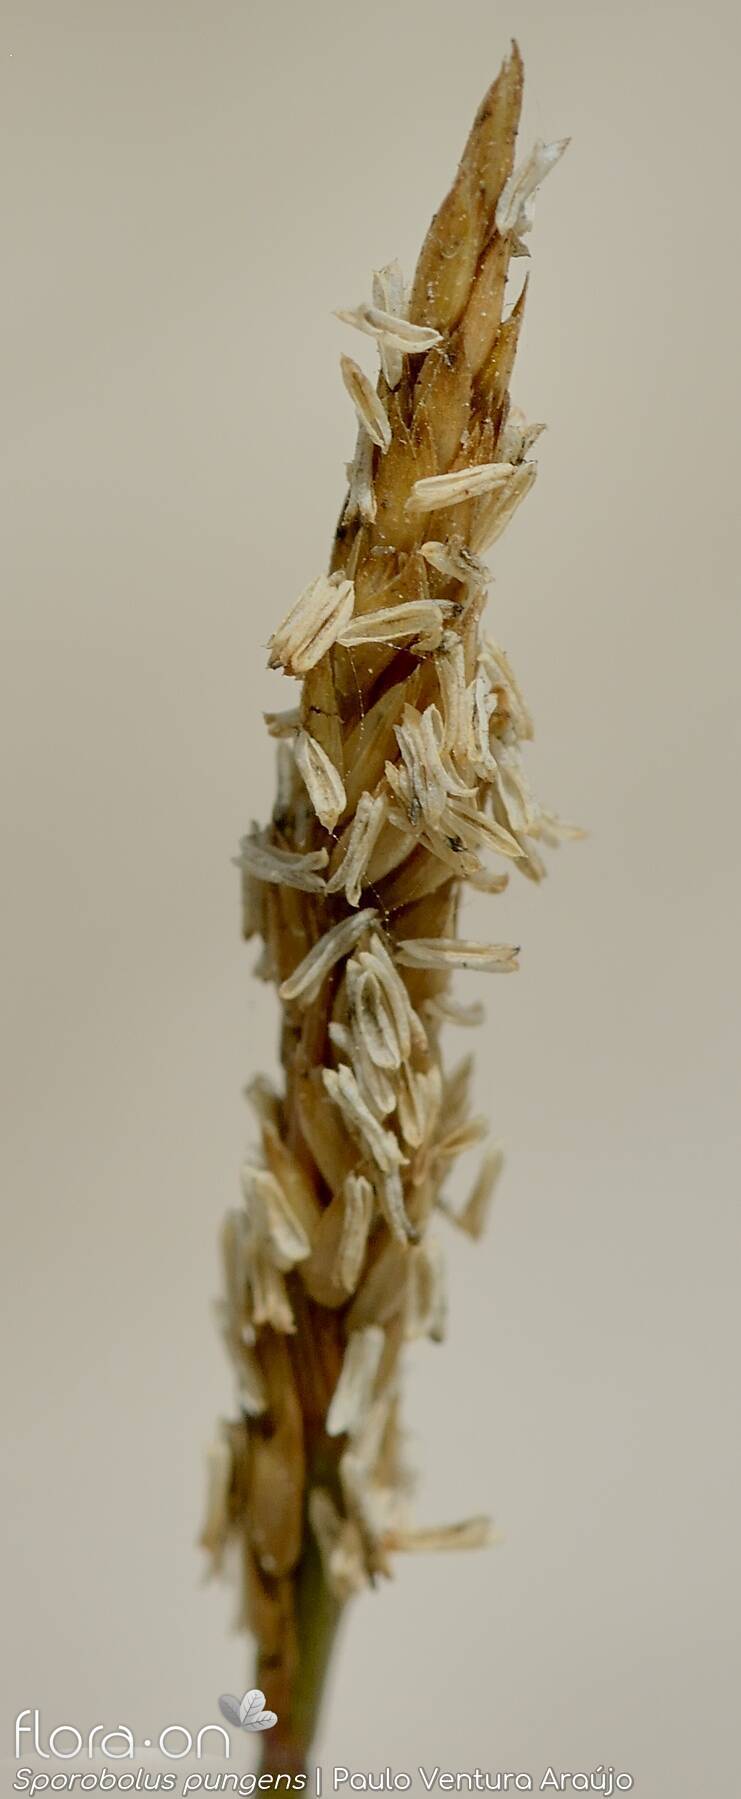 Sporobolus pungens - Flor (close-up) | Paulo Ventura Araújo; CC BY-NC 4.0